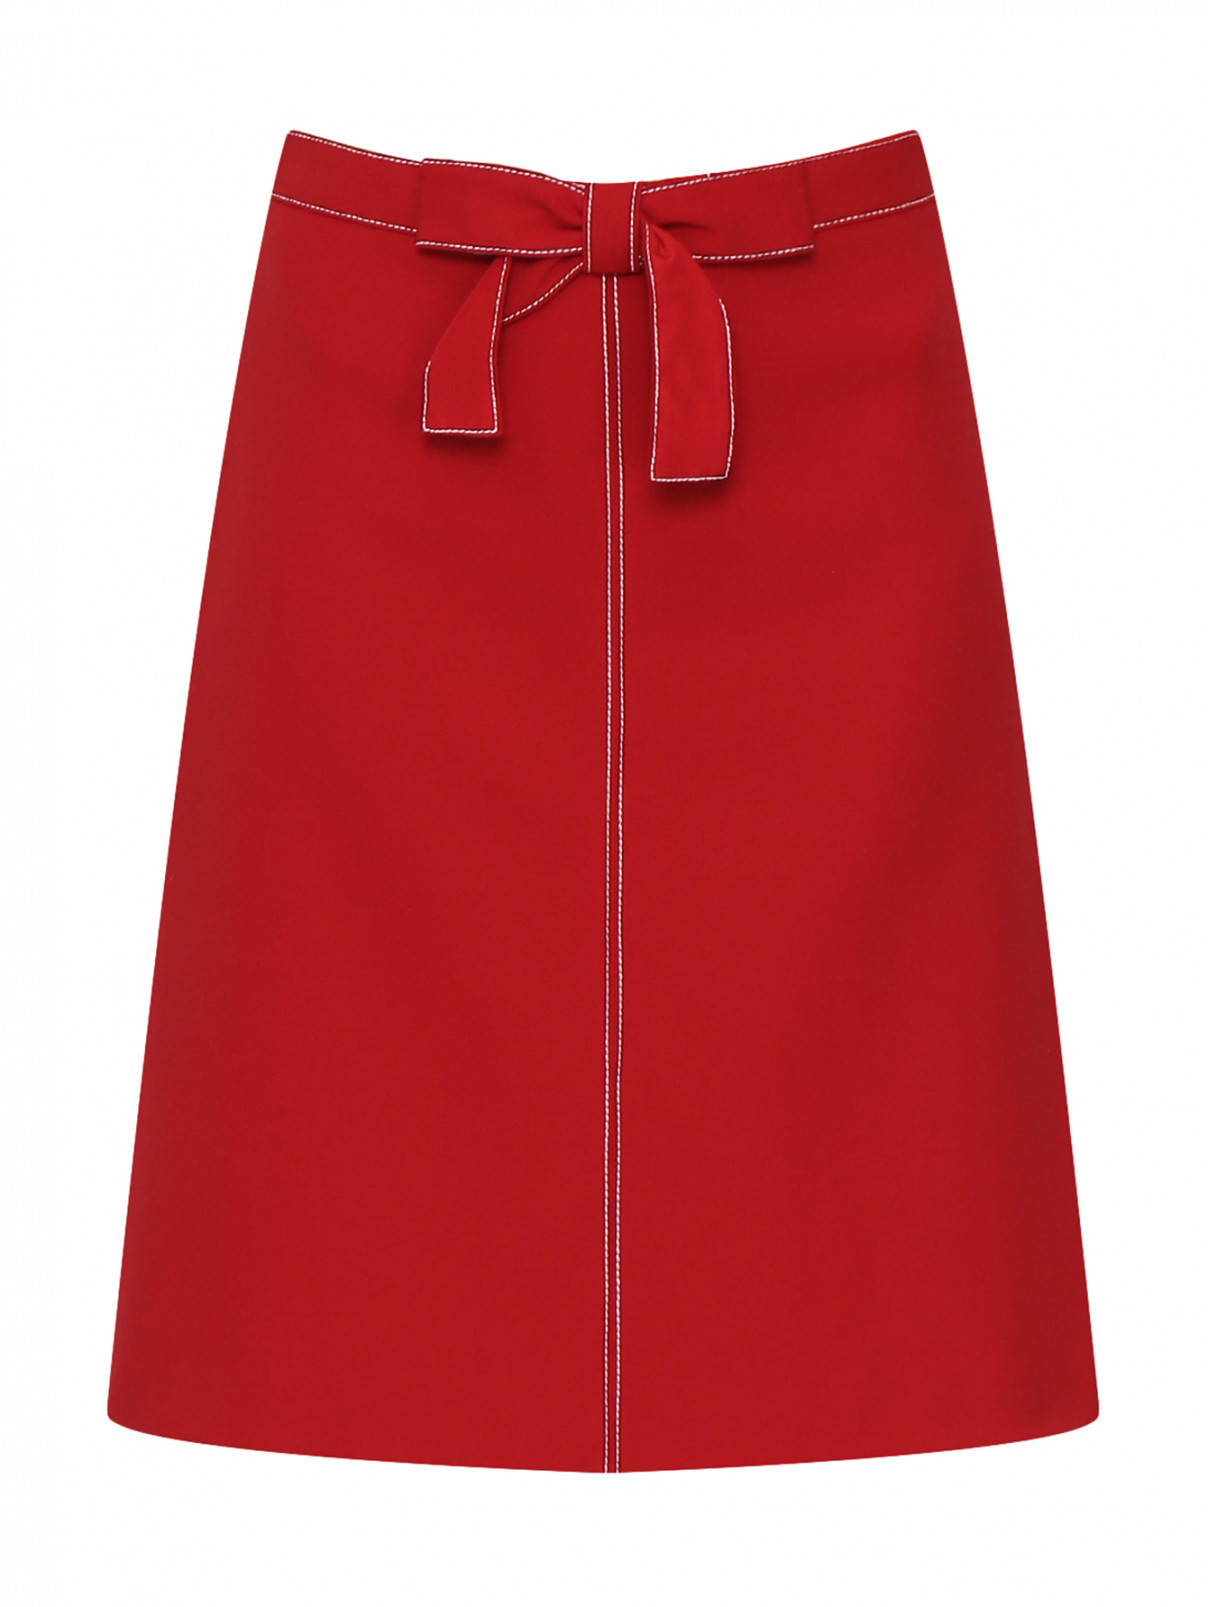 Юбка-мини с контрастной отделкой Red Valentino  –  Общий вид  – Цвет:  Красный